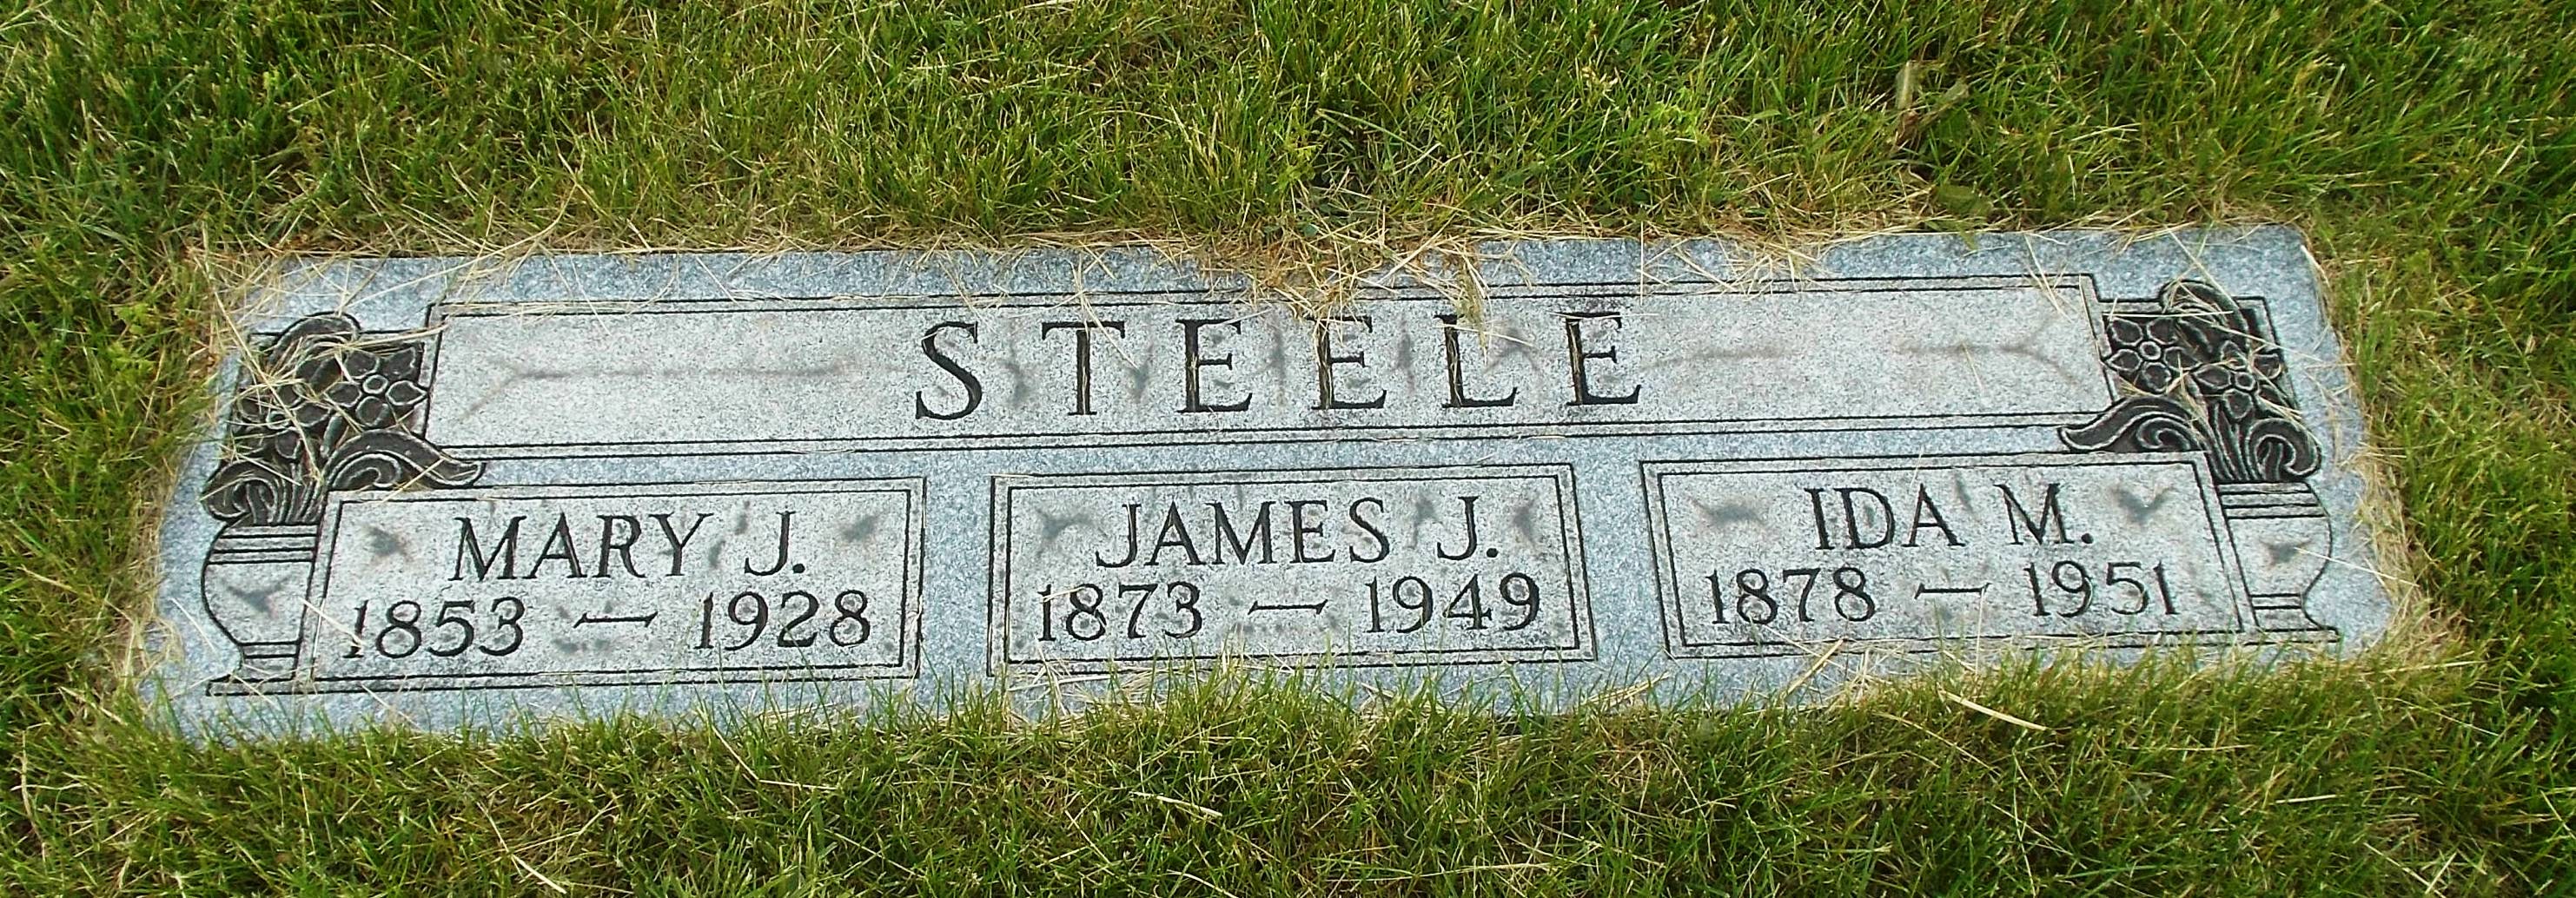 Mary J Steele